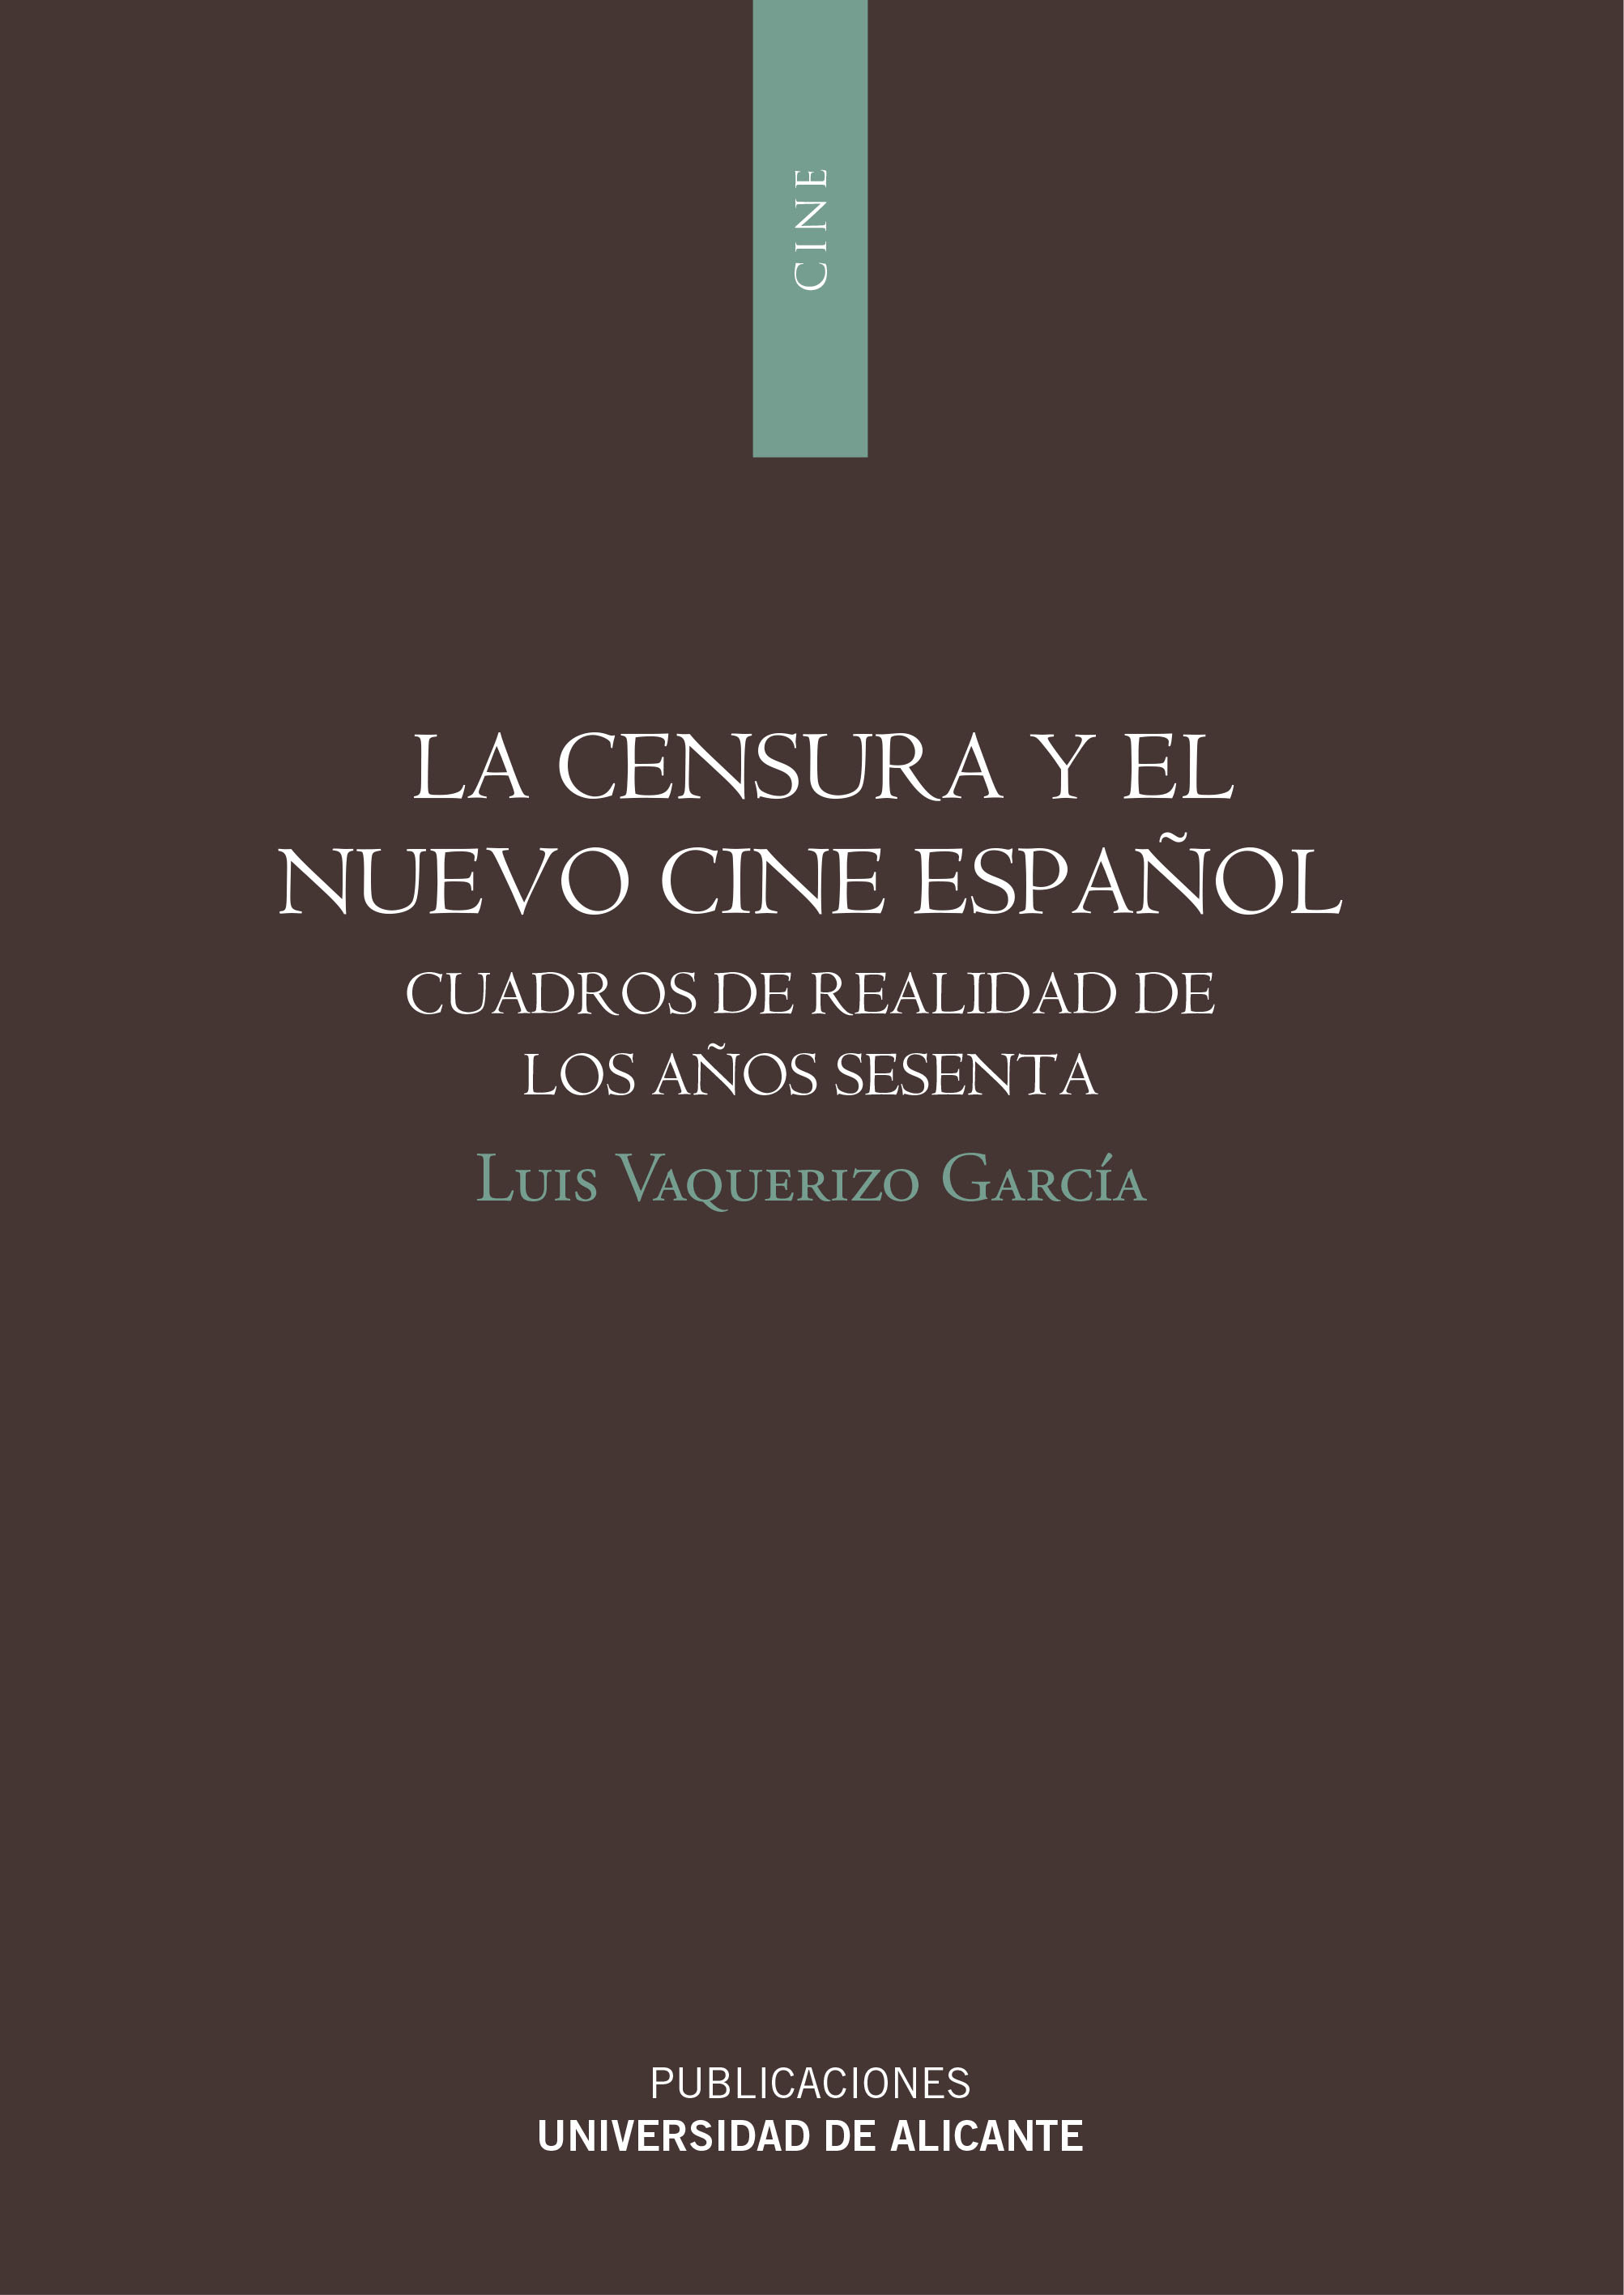 La censura y el nuevo cine espaÃ±ol